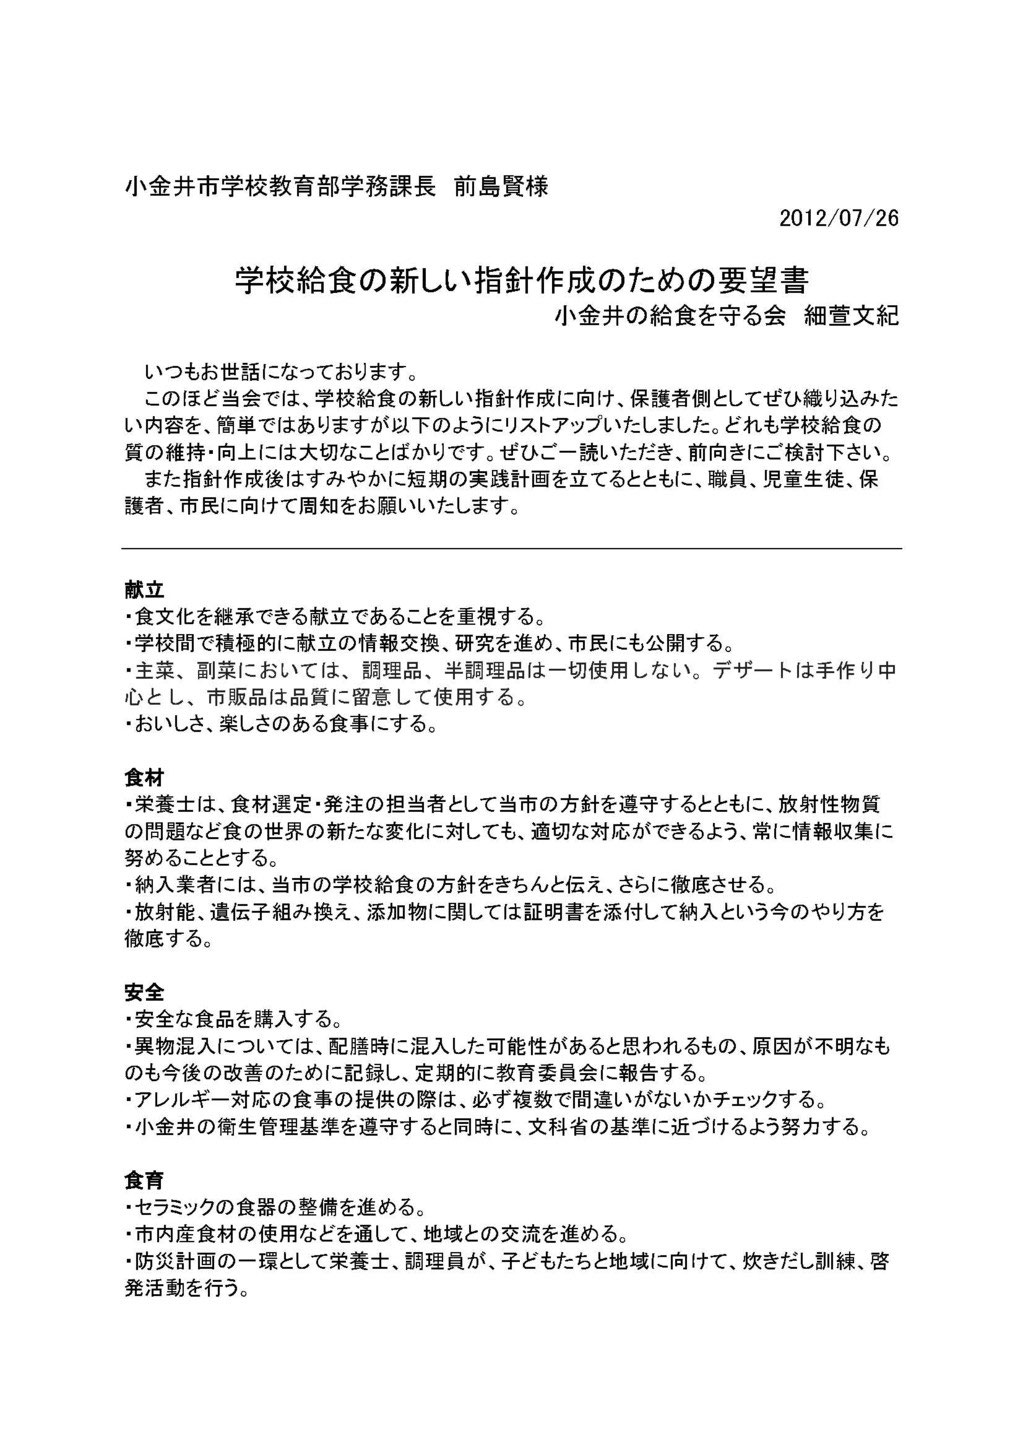 市に提出された文書 陳情書 要望書など Koganei Kyuusyoku ページ